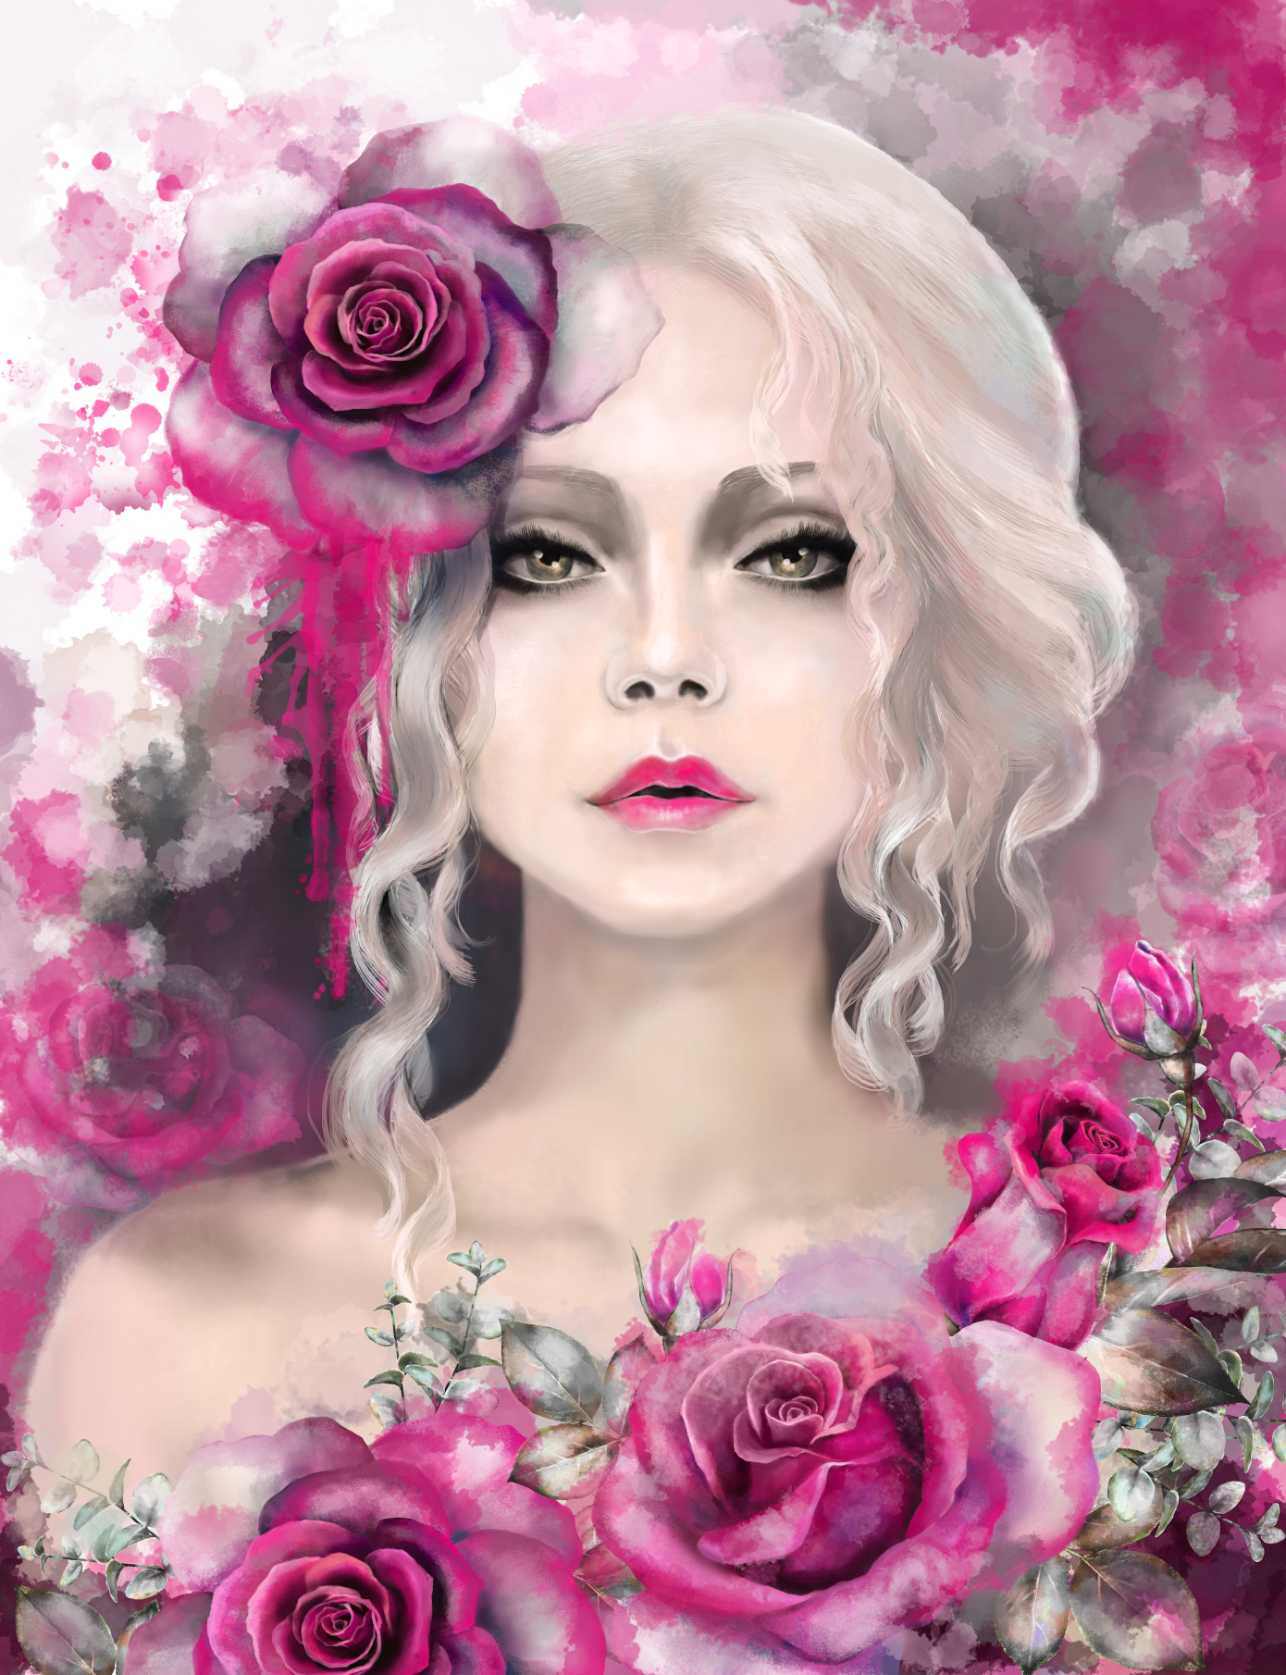 Pink rose fantasy portrait